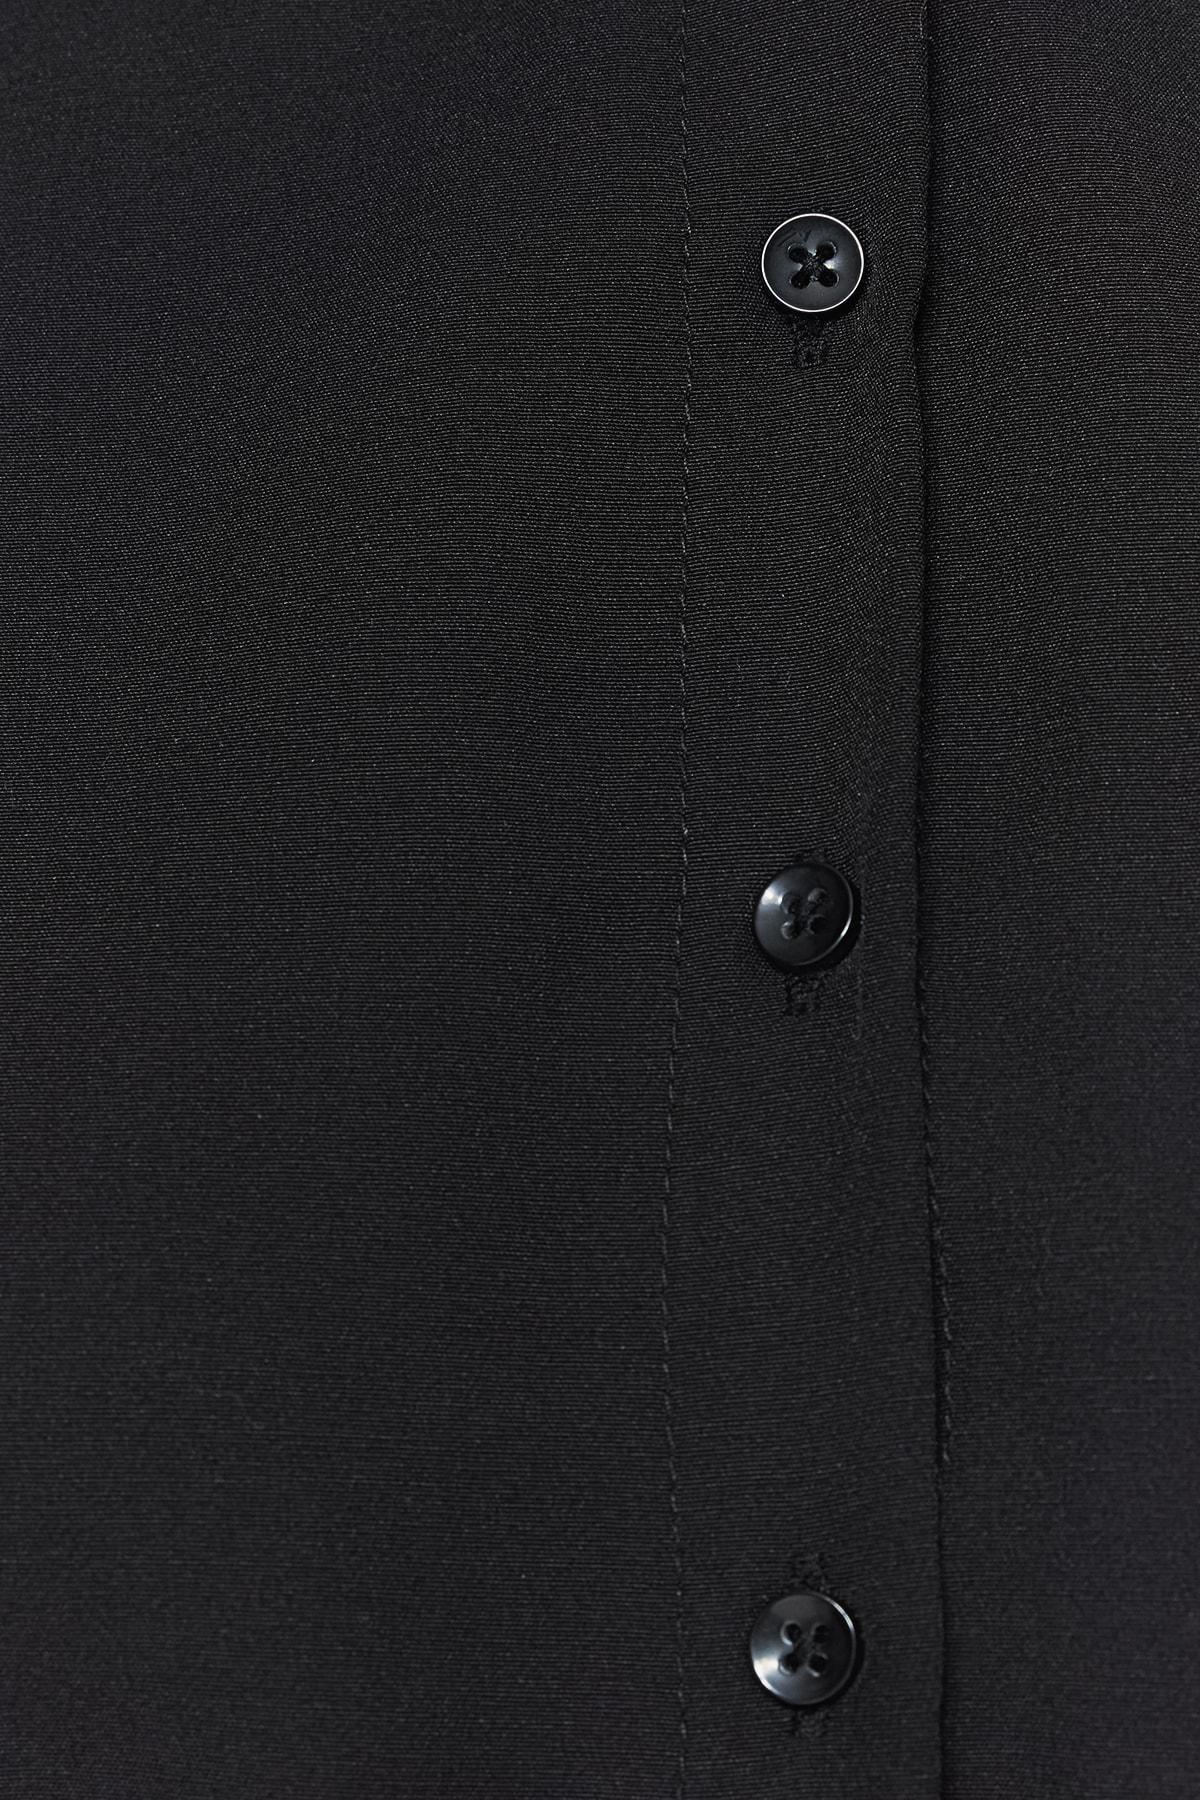 Trendyol - Black Knotted Belt Shirt Dress